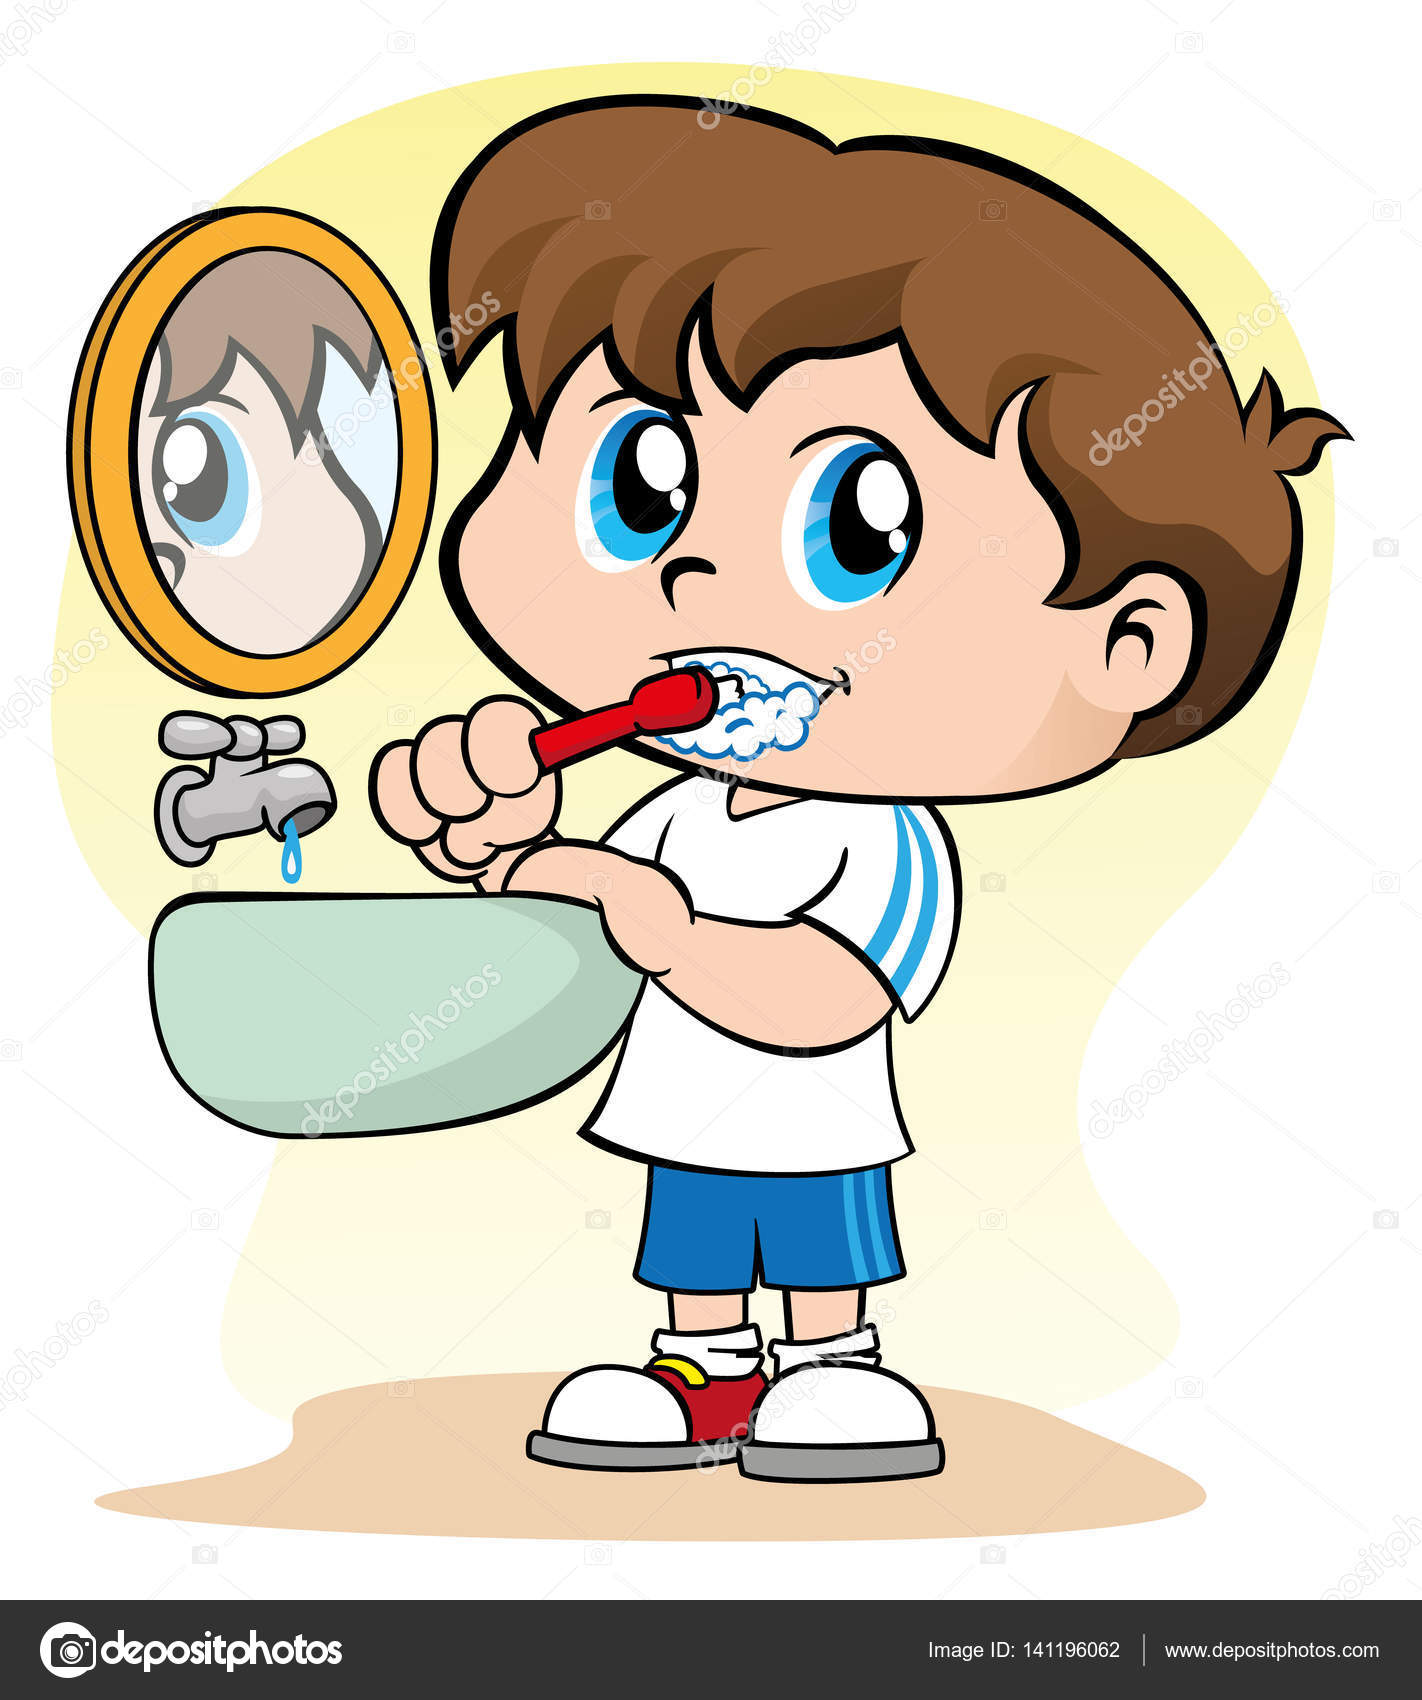 I wash and clean my teeth. Чистка зубов для детей иллюстрации. Чистим зубы!. Чистка зубов мультяшка. Чистка зубов картинки для детей.